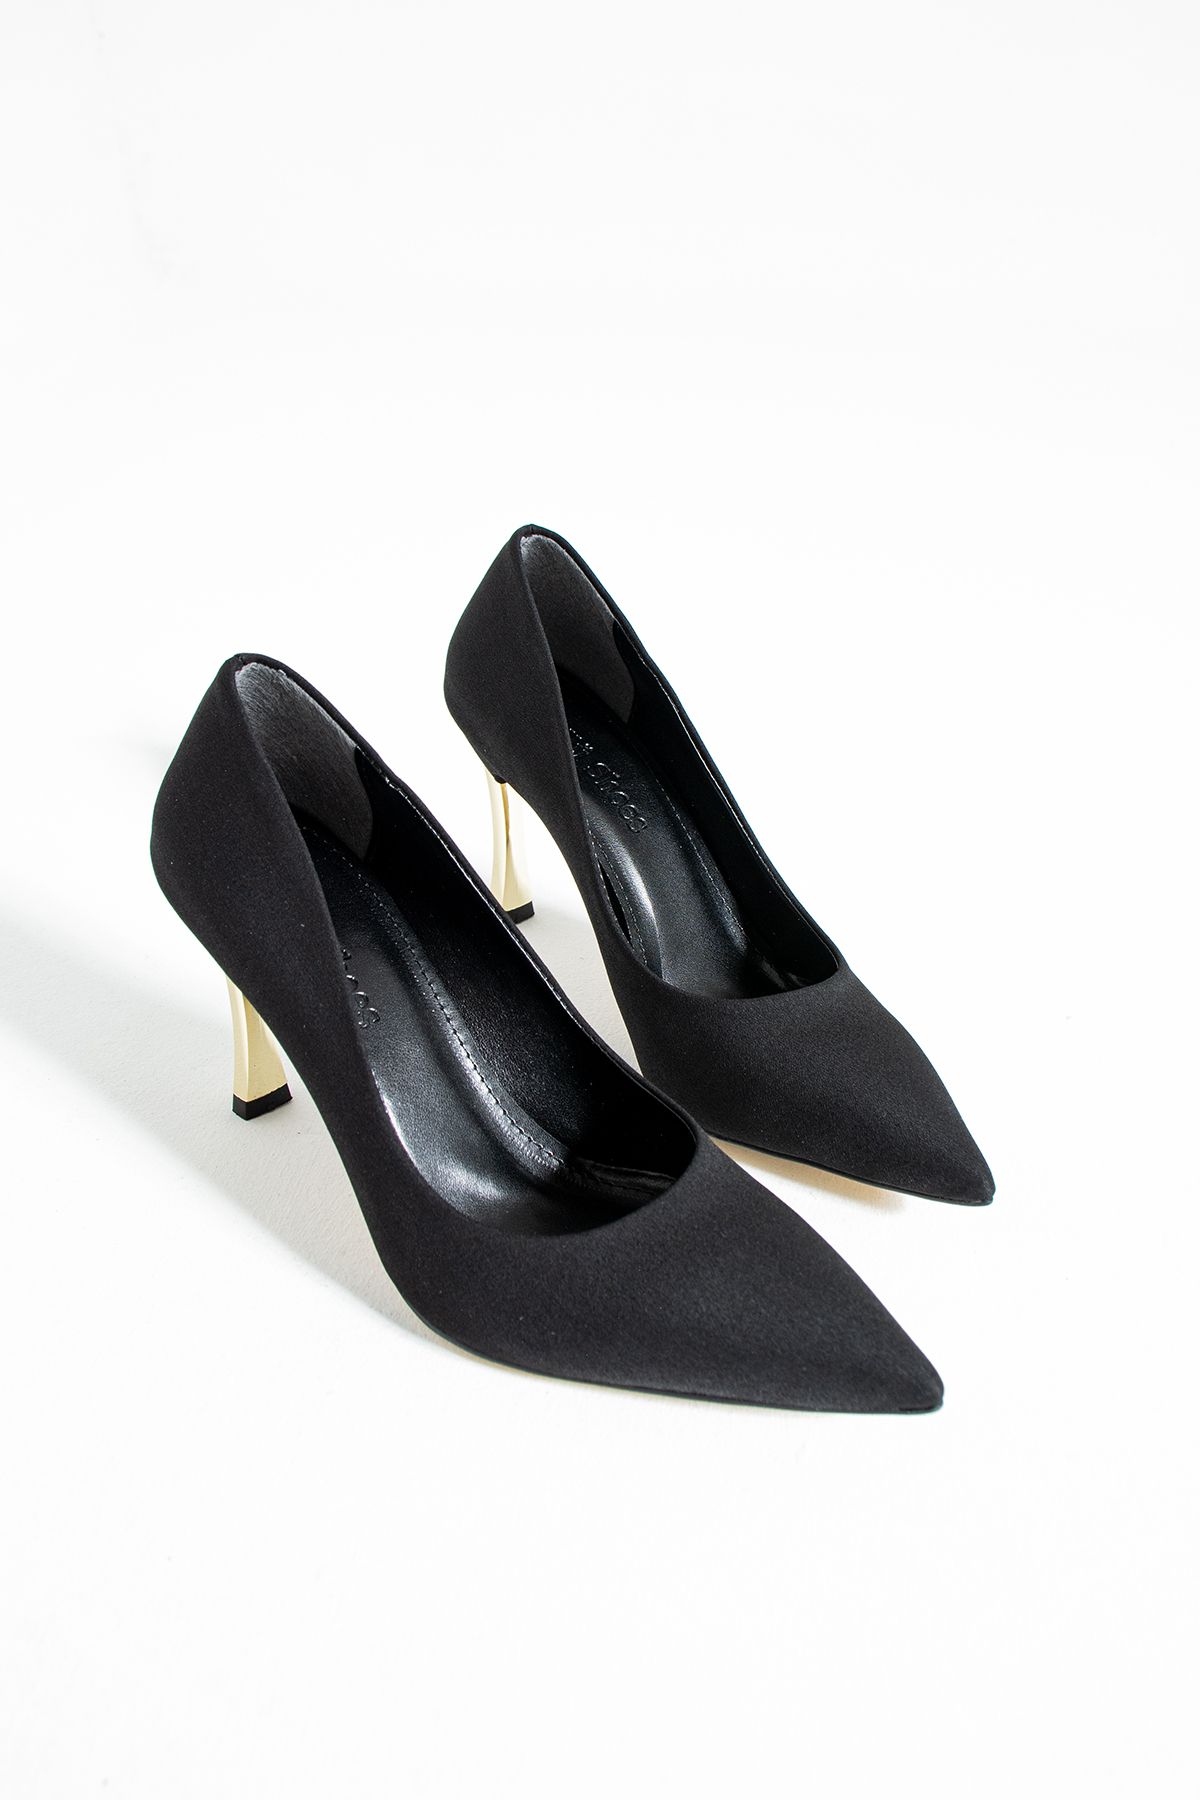 Güllü Shoes Kadın Topuklu Ayakkabı - Yüksek Topuklu Stiletto Rahat Şık Ve Ince Iş Ayakkabısı Siyah Renk 9 Cm